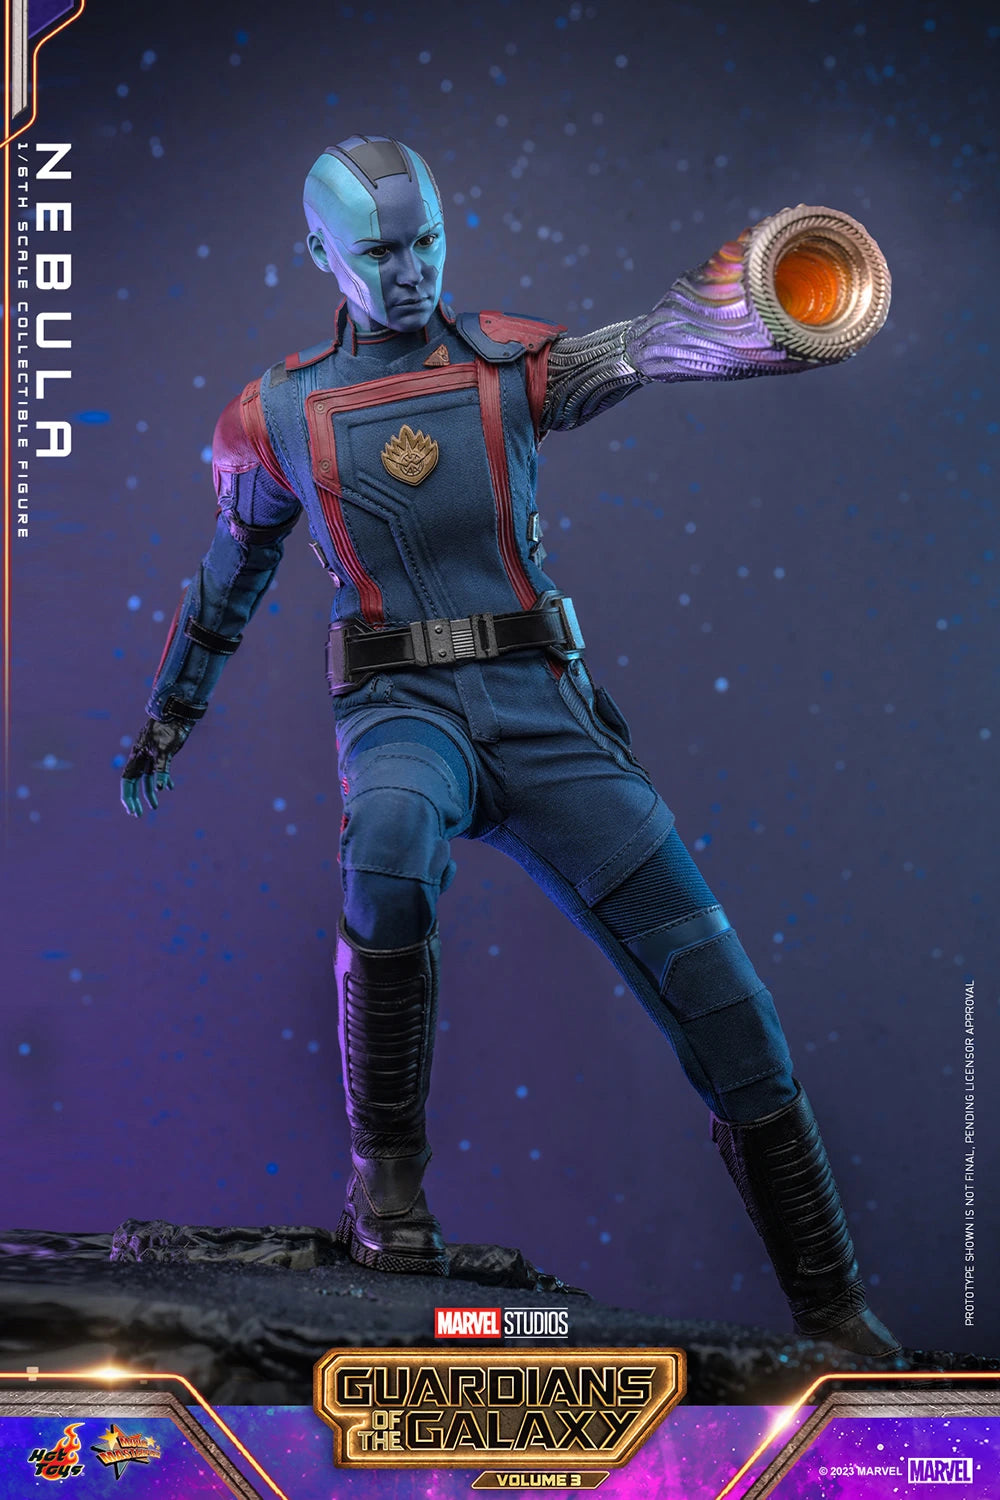 Hot Toys Movie Masterpiece Series: Marvel Guardianes De La Galaxia Vol 3 - Nebula Escala 1/6